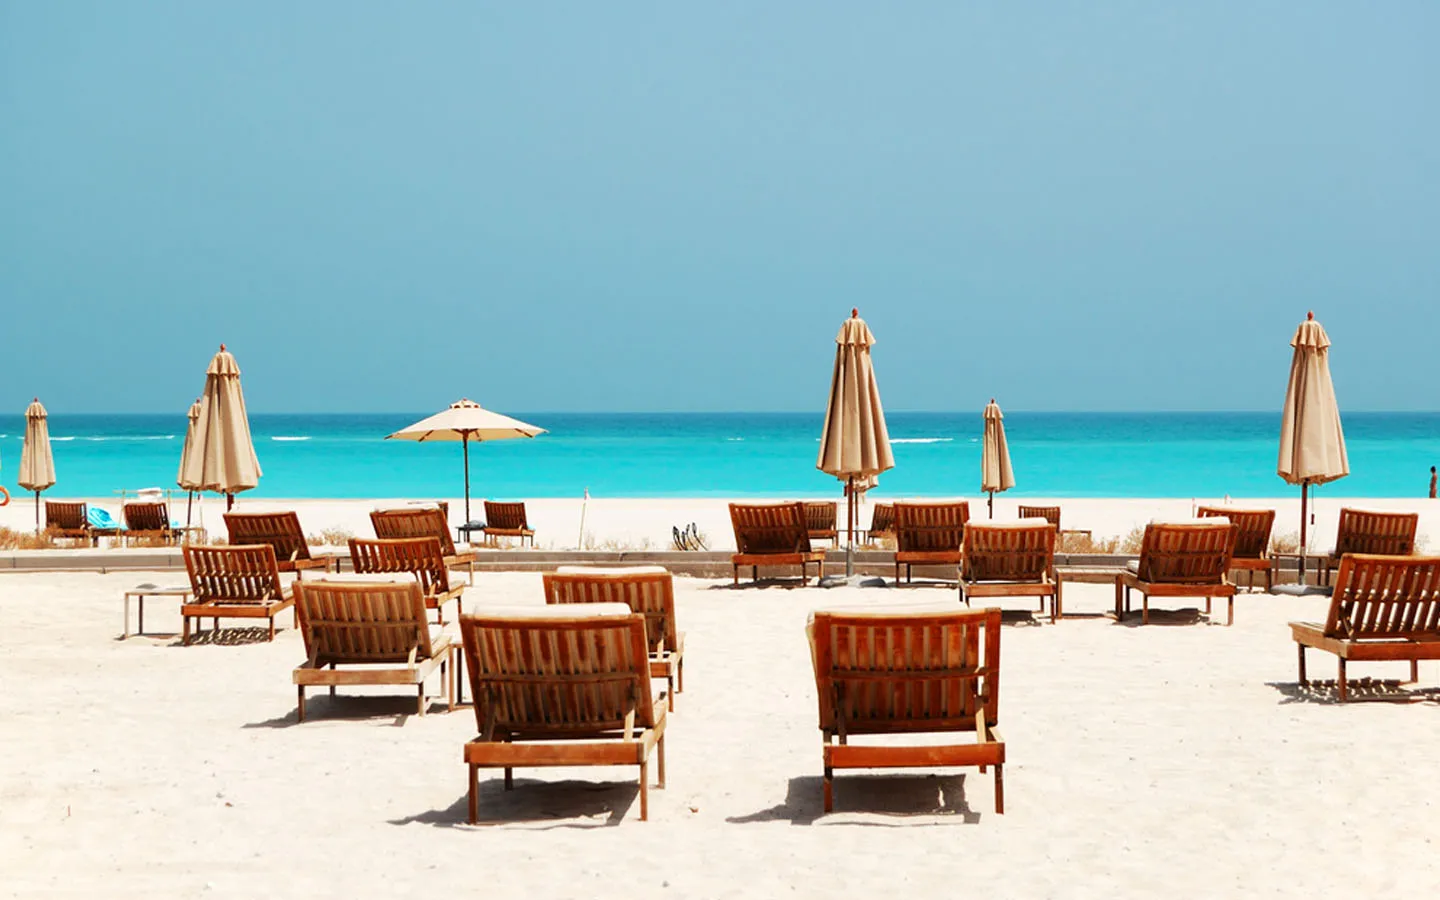 Saadiyat Beach - белоснежный пляж на острове Саадият, в нескольких часах езды от Дубая.